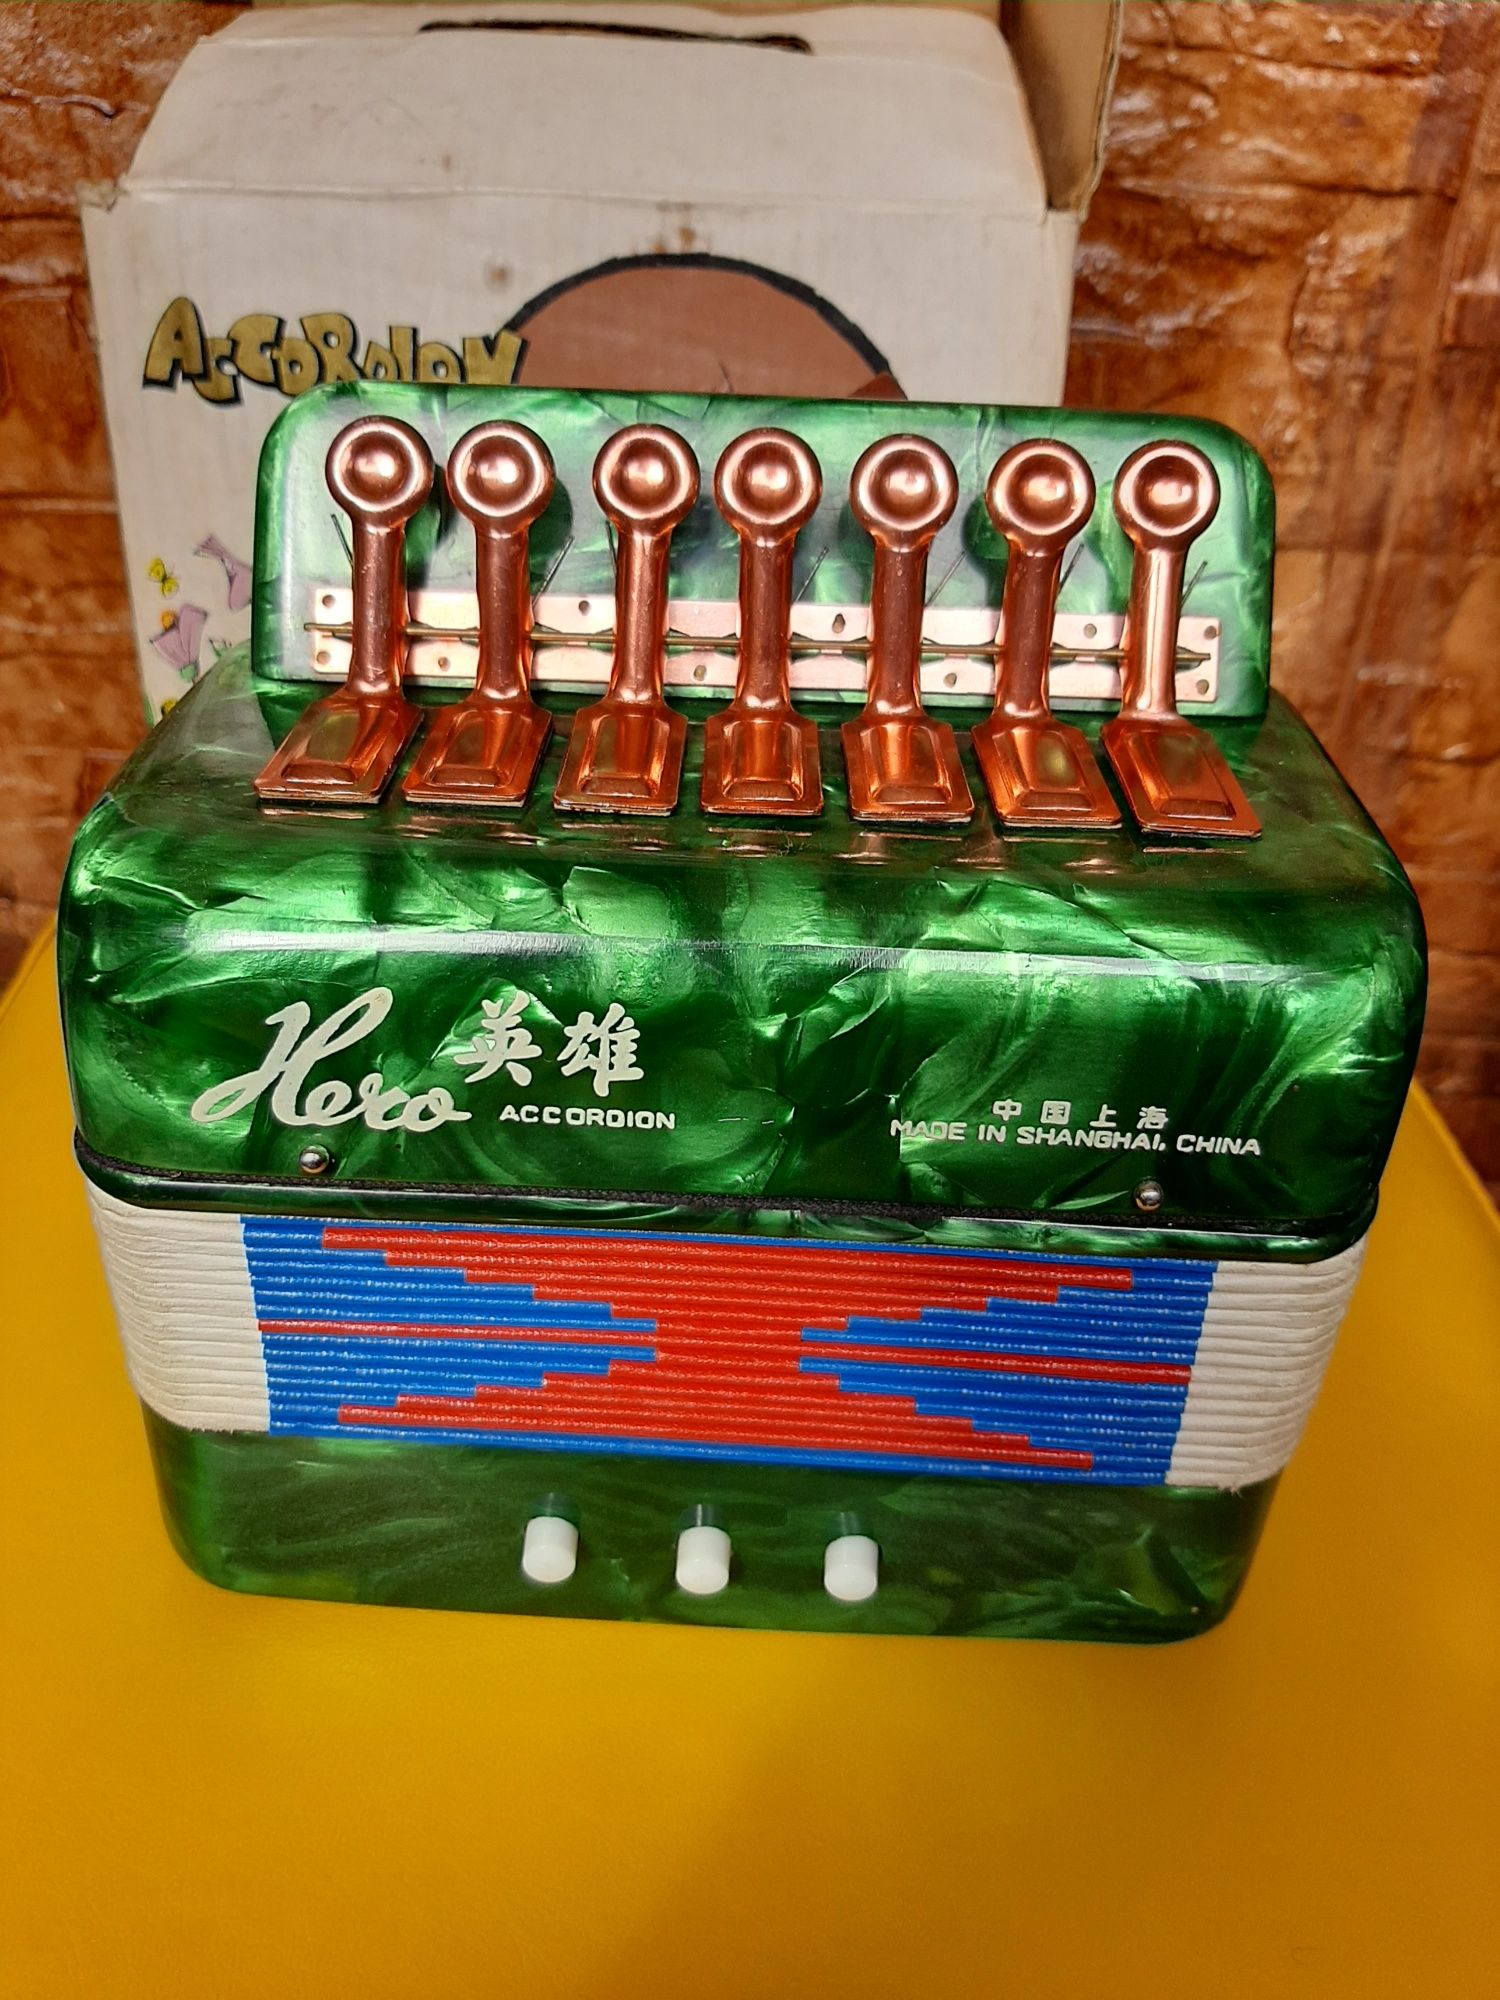 Acordeon de jucarie Made in China din anii 1980 in cutia originala